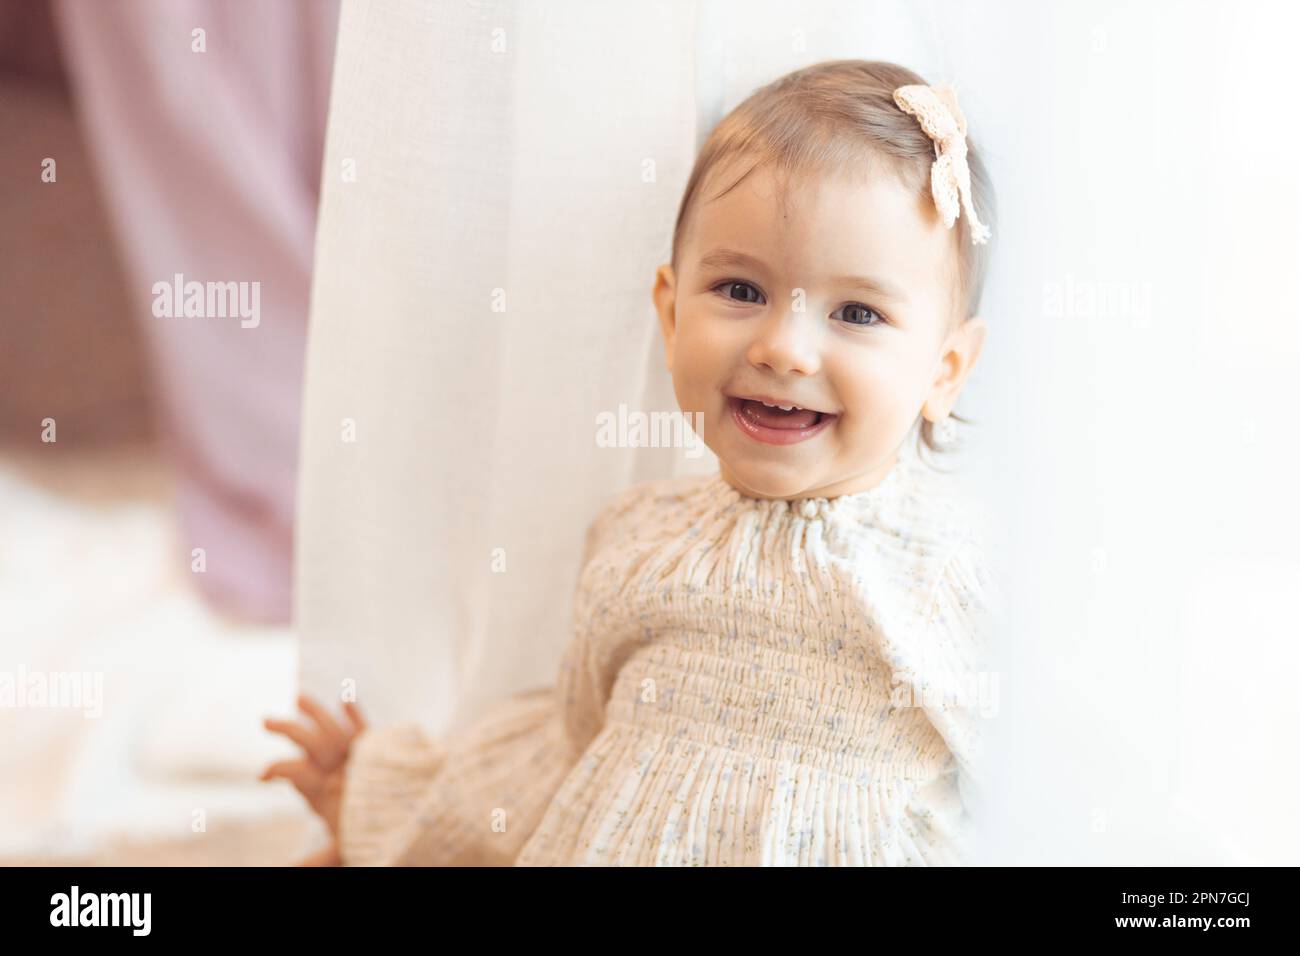 Portrait en gros plan d'une petite fille d'un an souriant Banque D'Images